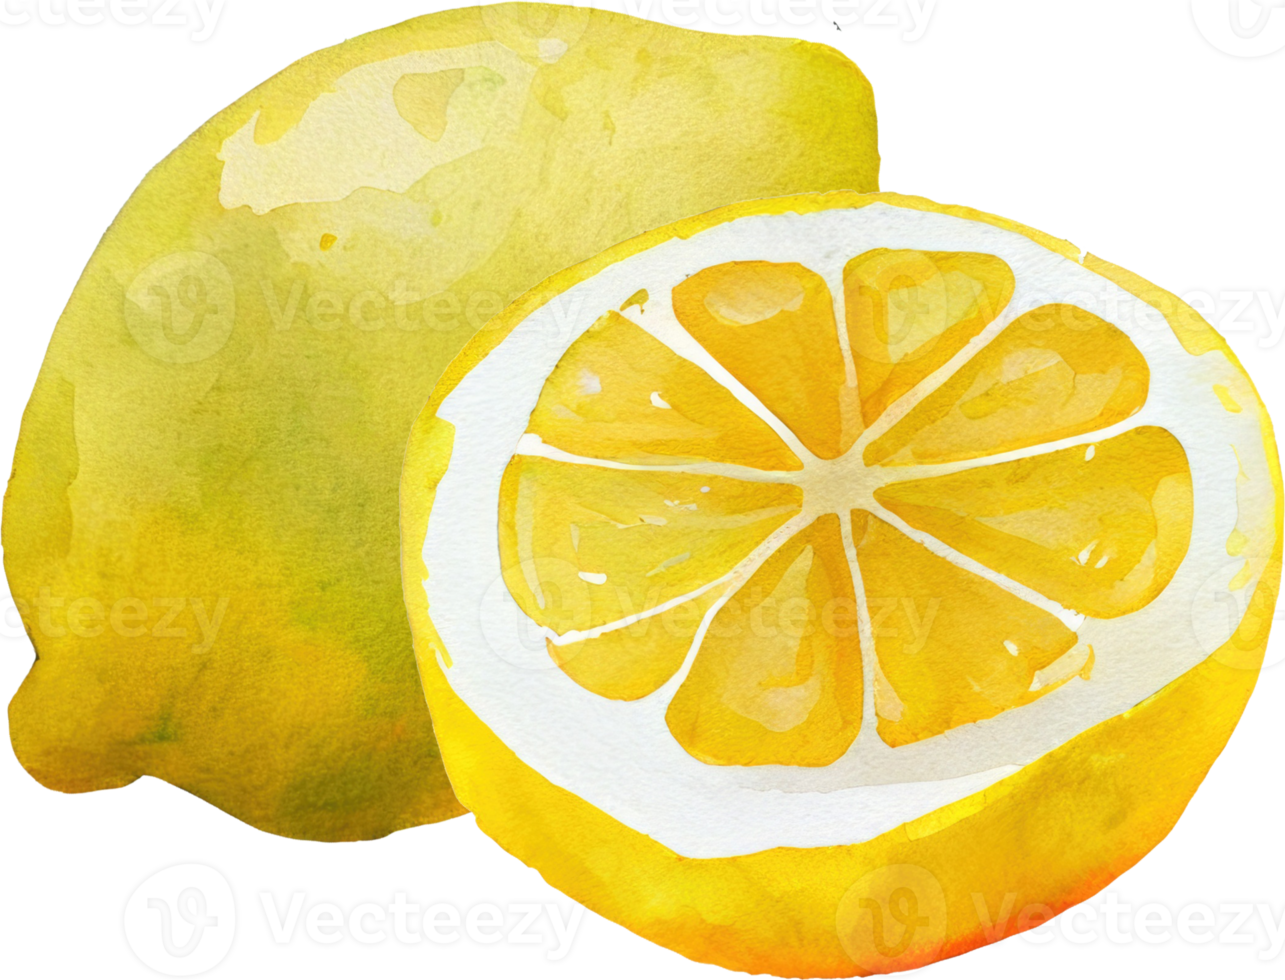 ilustração em aquarela de frutas de limão png